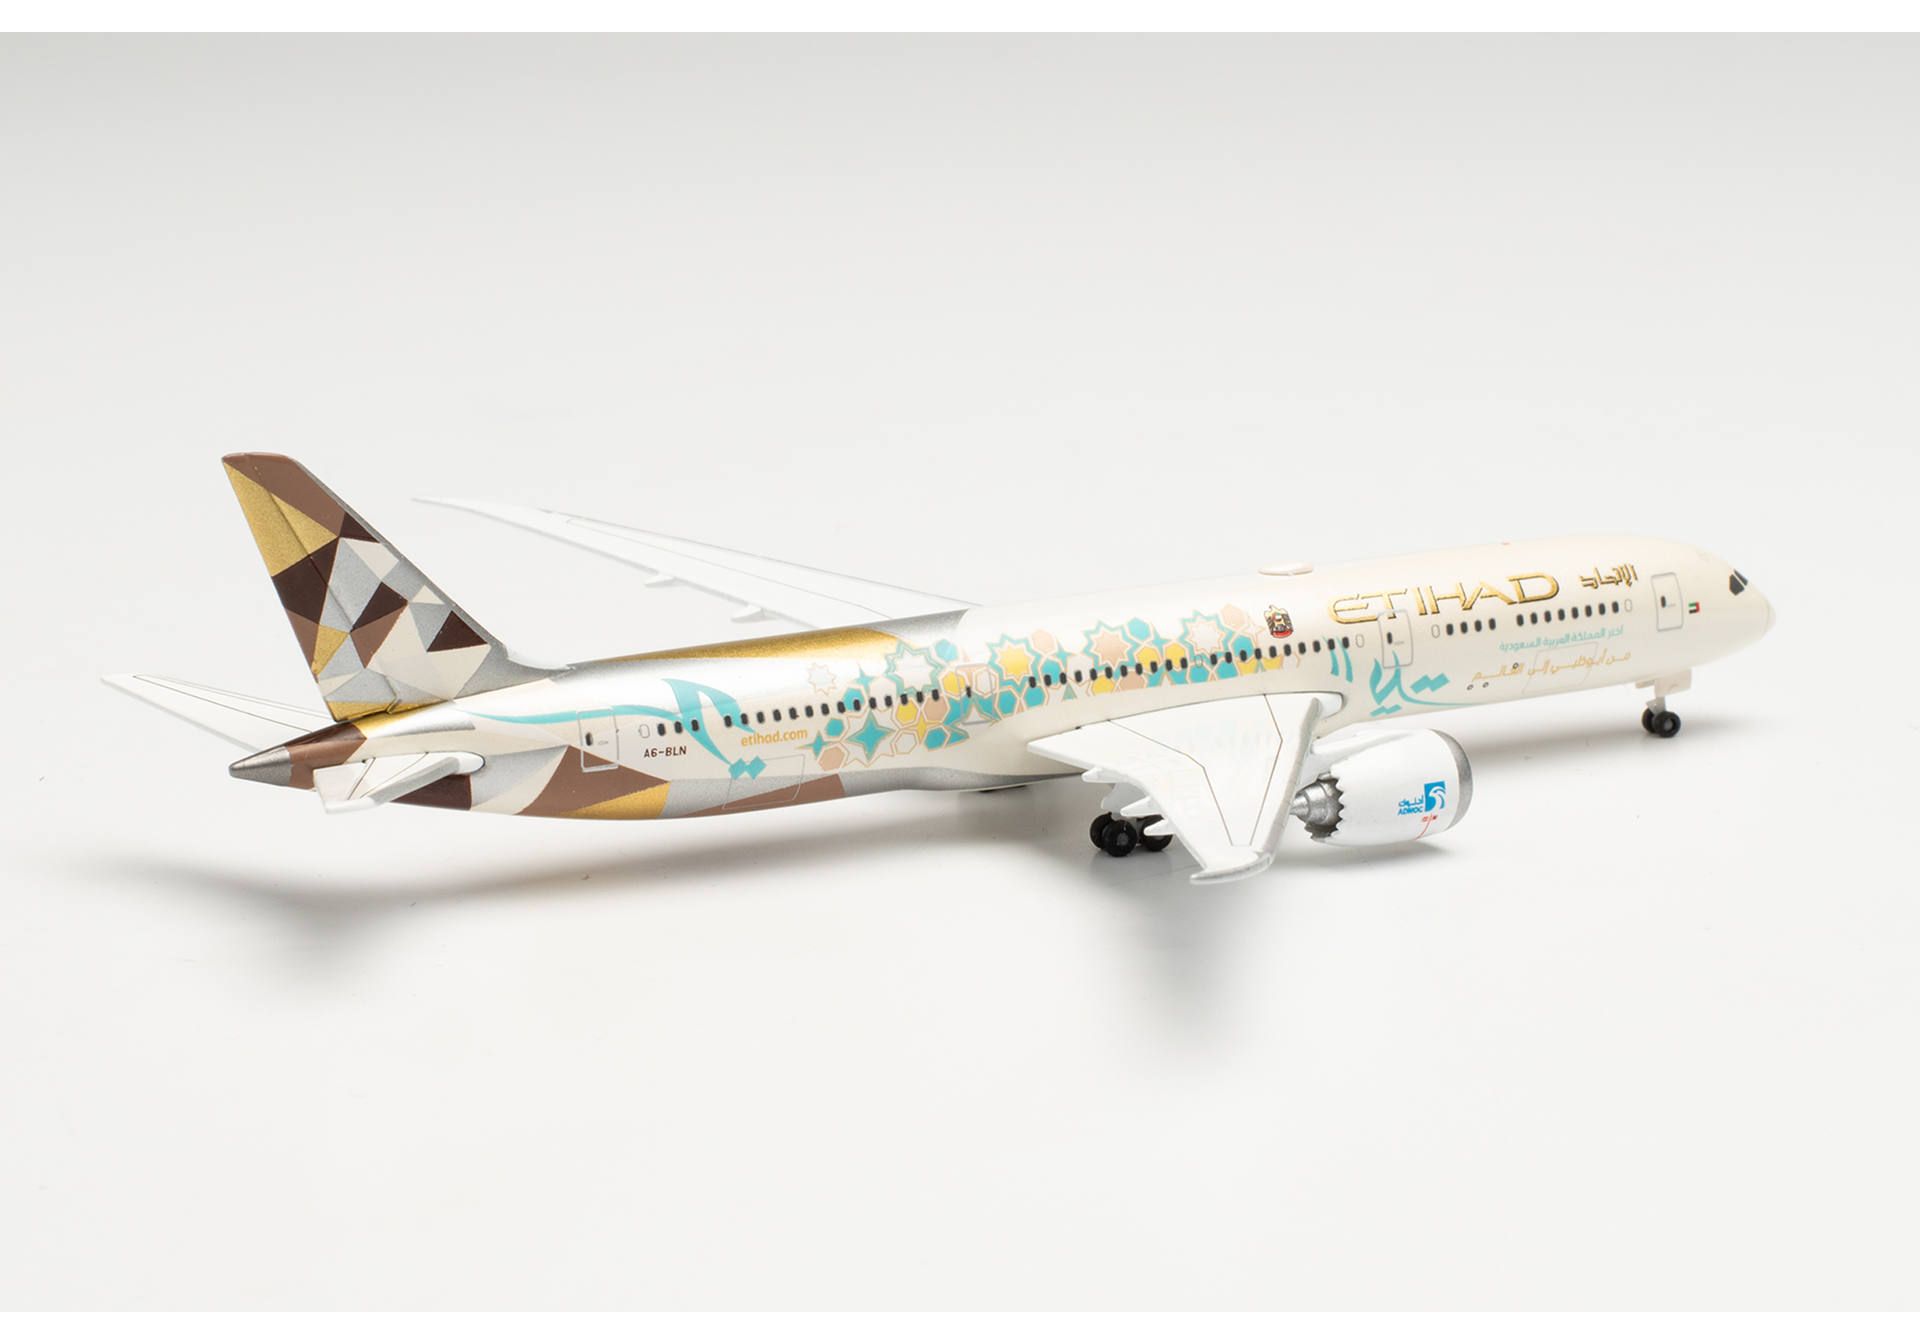  ETIHAD AIRWAYS BOEING 787-9 DREAMLINER CHOOSE SAUDI ARABIA  A6-BLN 1:500 535748. # 2 hobbyplus.ru